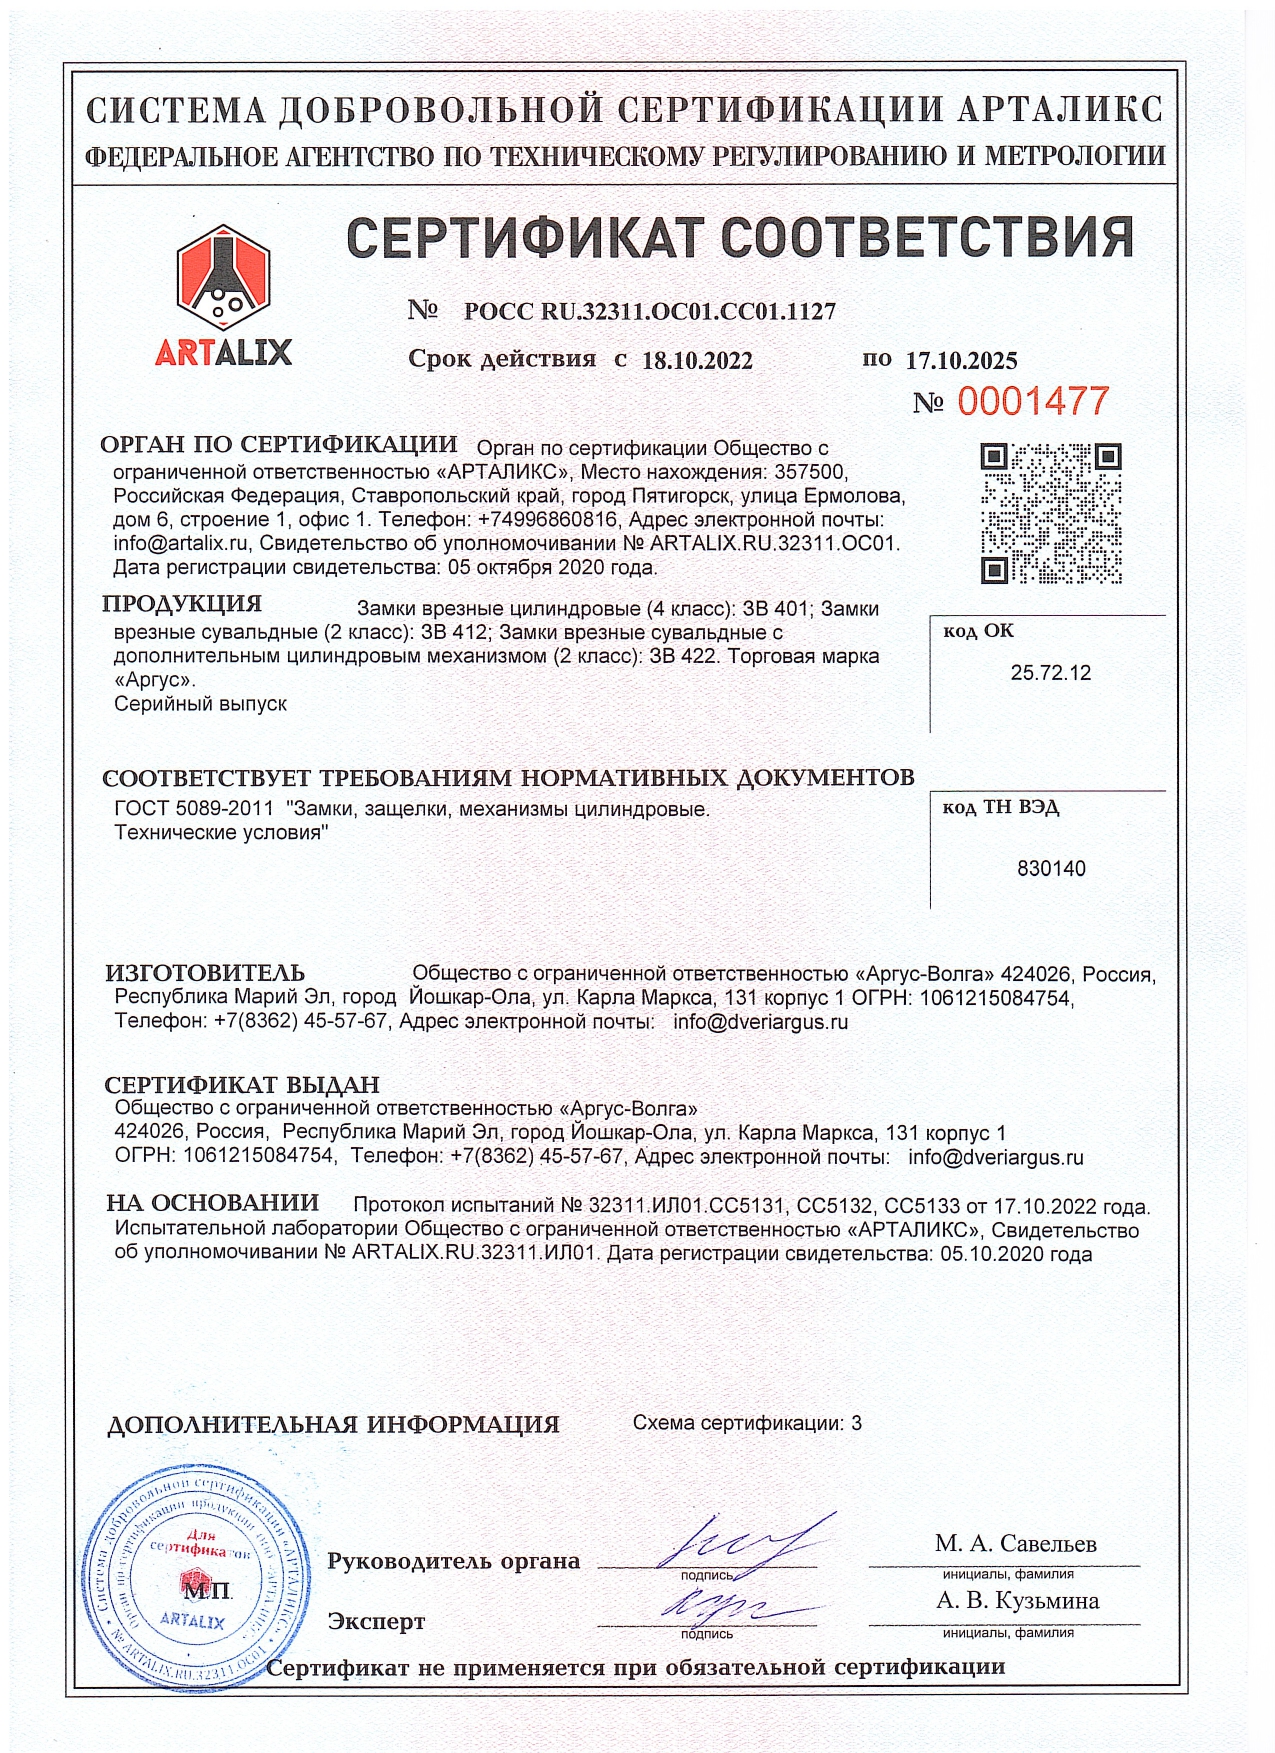 Сертификат Замки врезные цилиндровые 401, 412